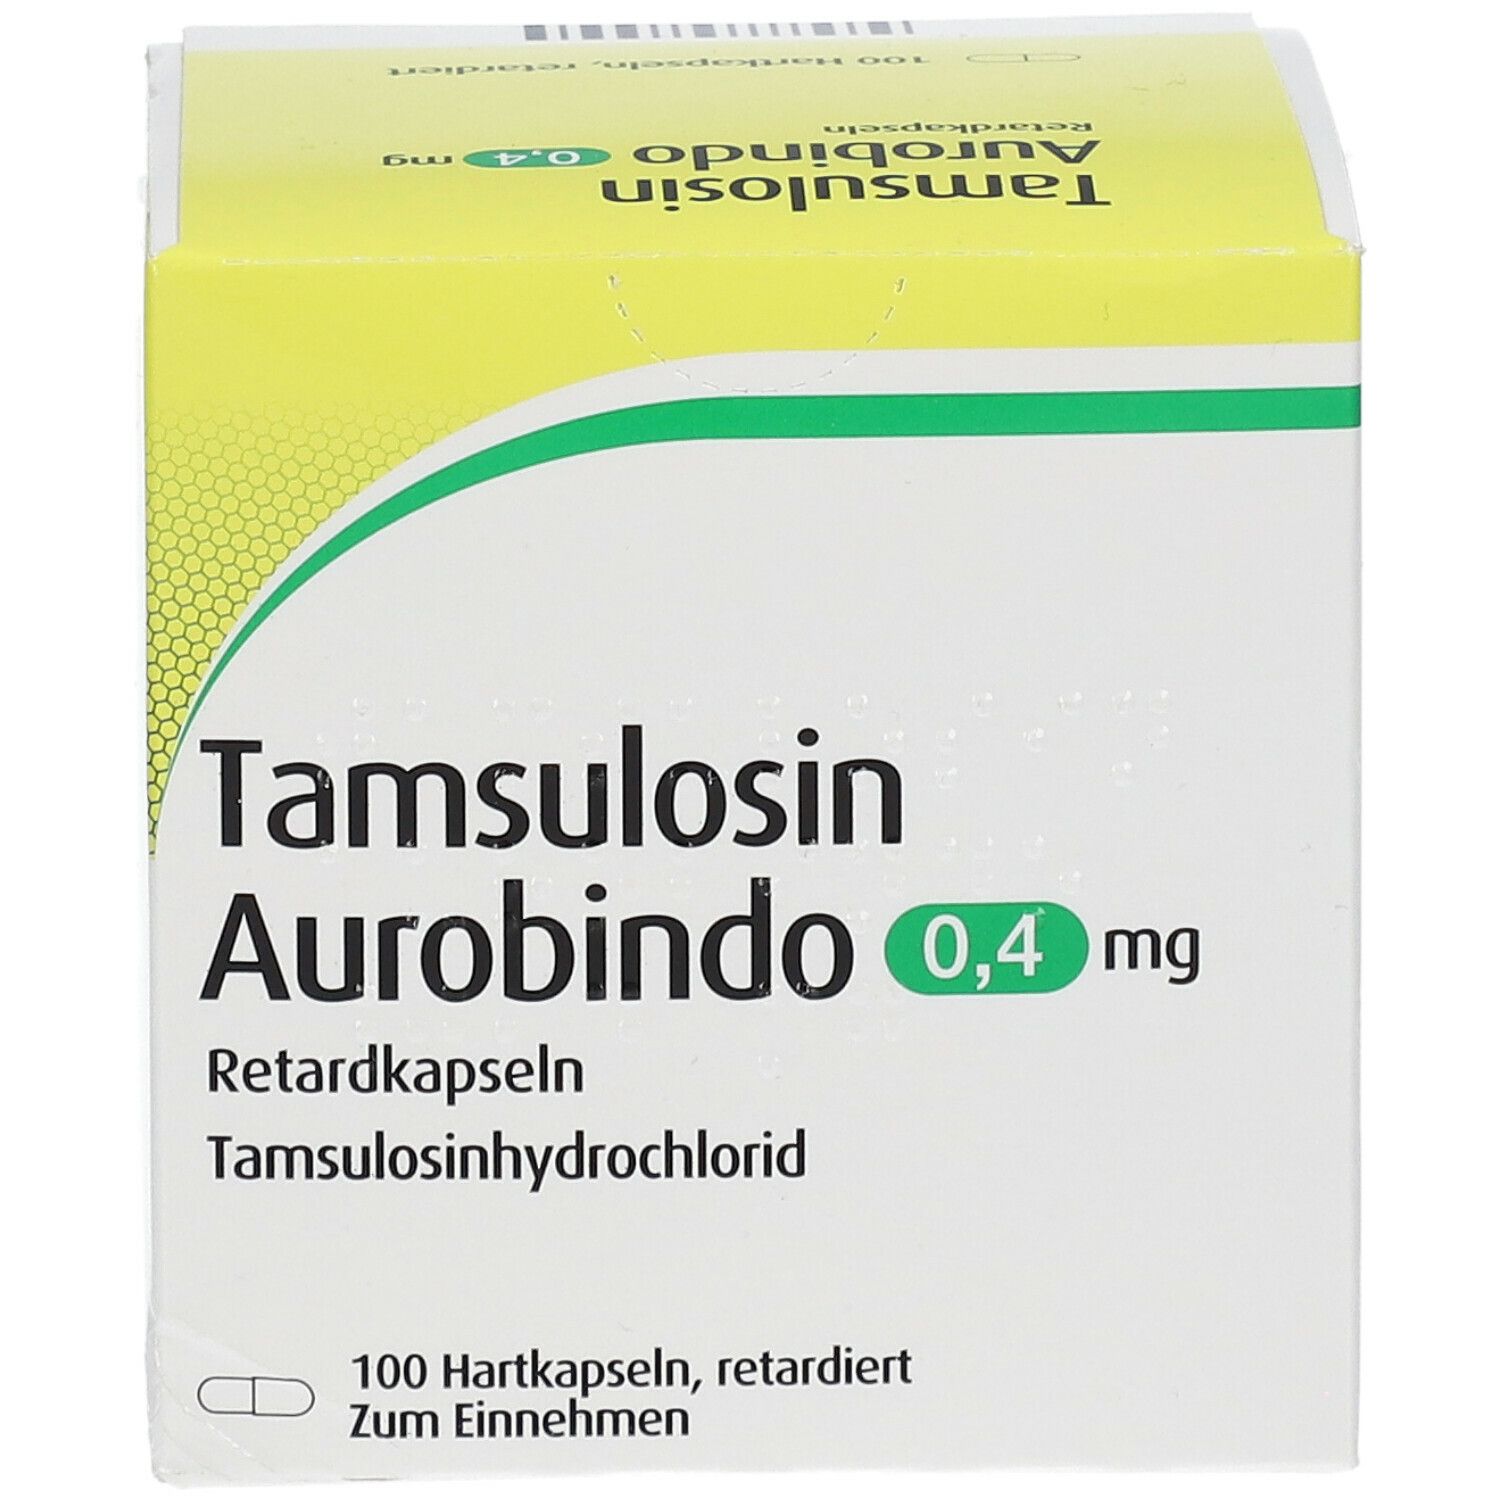 Tamsulosin Aurobindo 0,4 mg